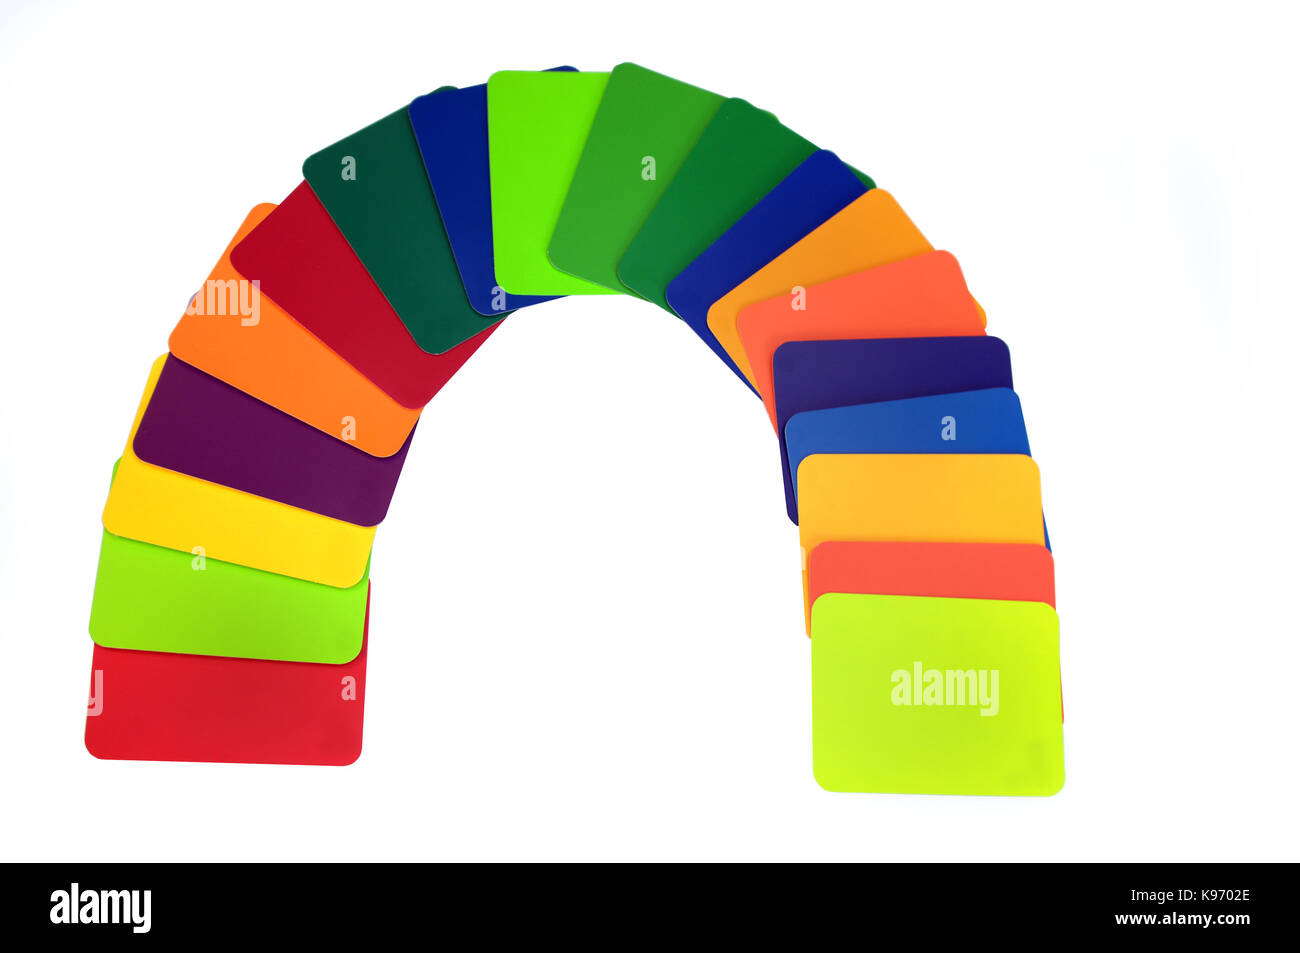 Tutti i colori dell arcobaleno sono rappresentati nella scelta dei campioni disponibili per pittori e ristrutturazione operatori. Carte colore sono curvi per formare un ar Foto Stock